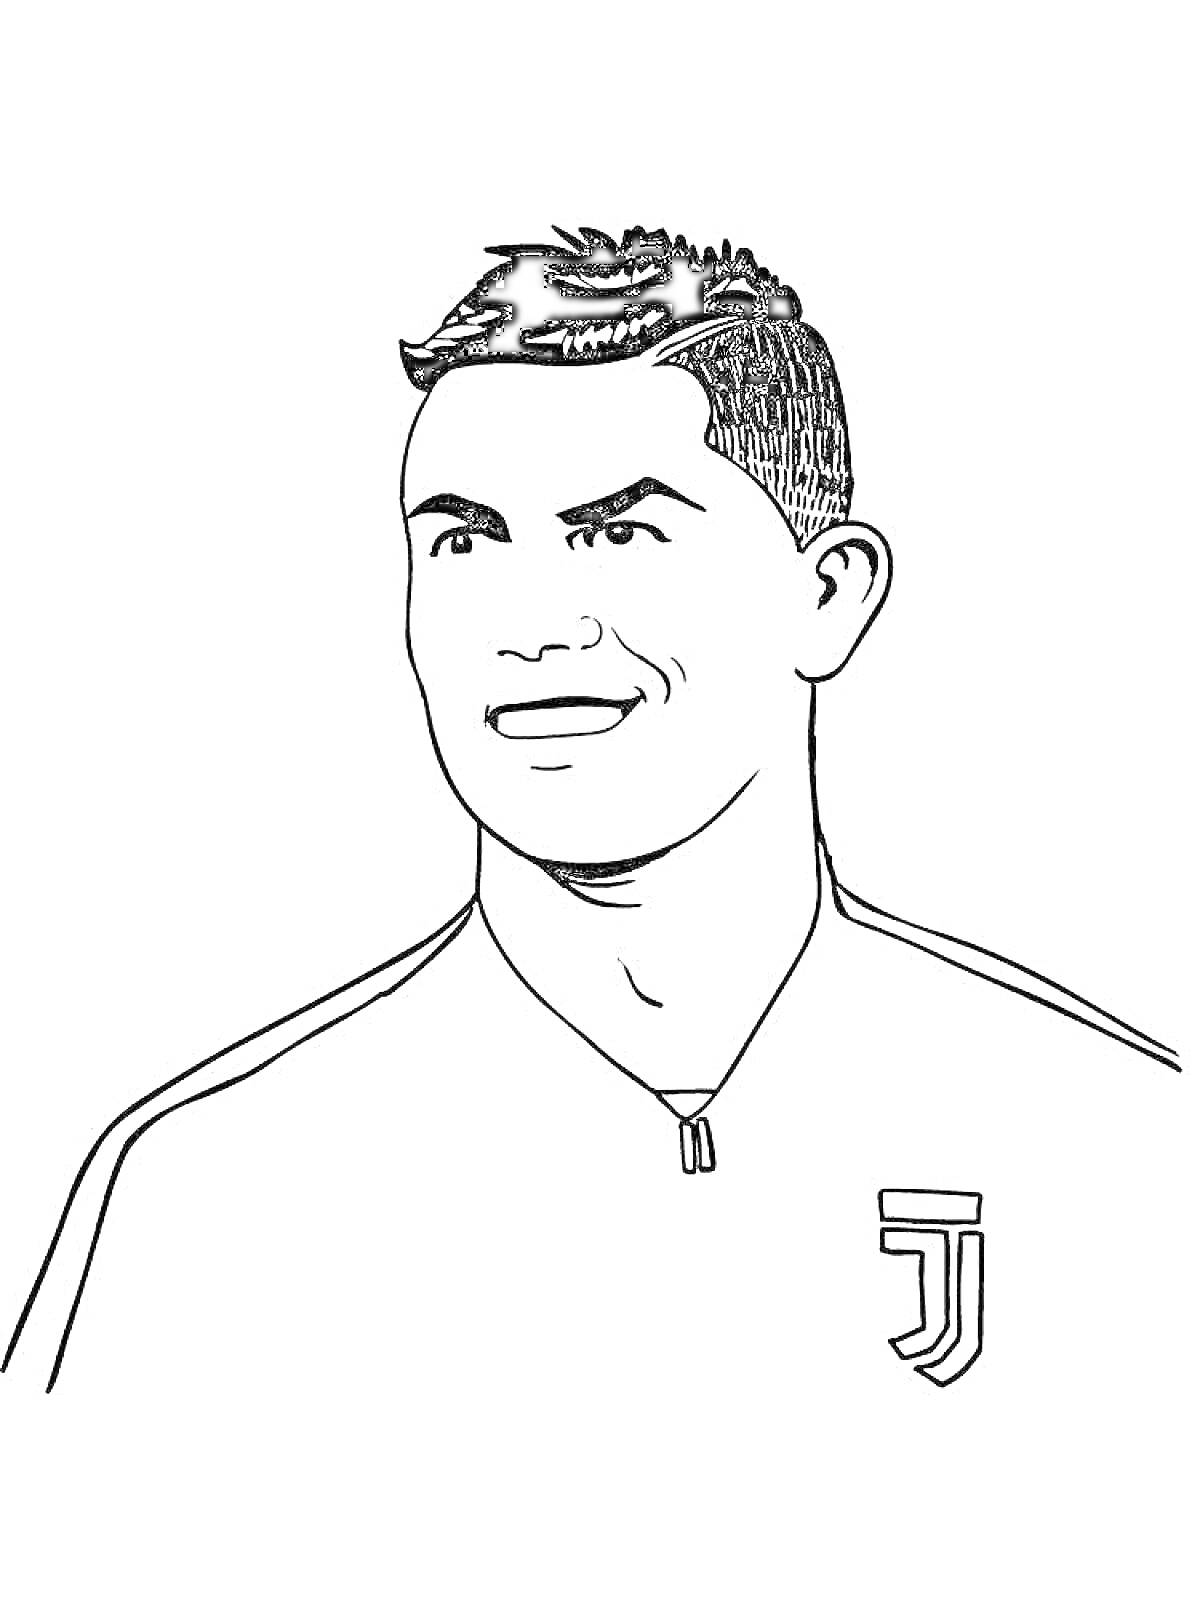 Раскраска Человек в футболке с эмблемой клуба, с короткими волосами